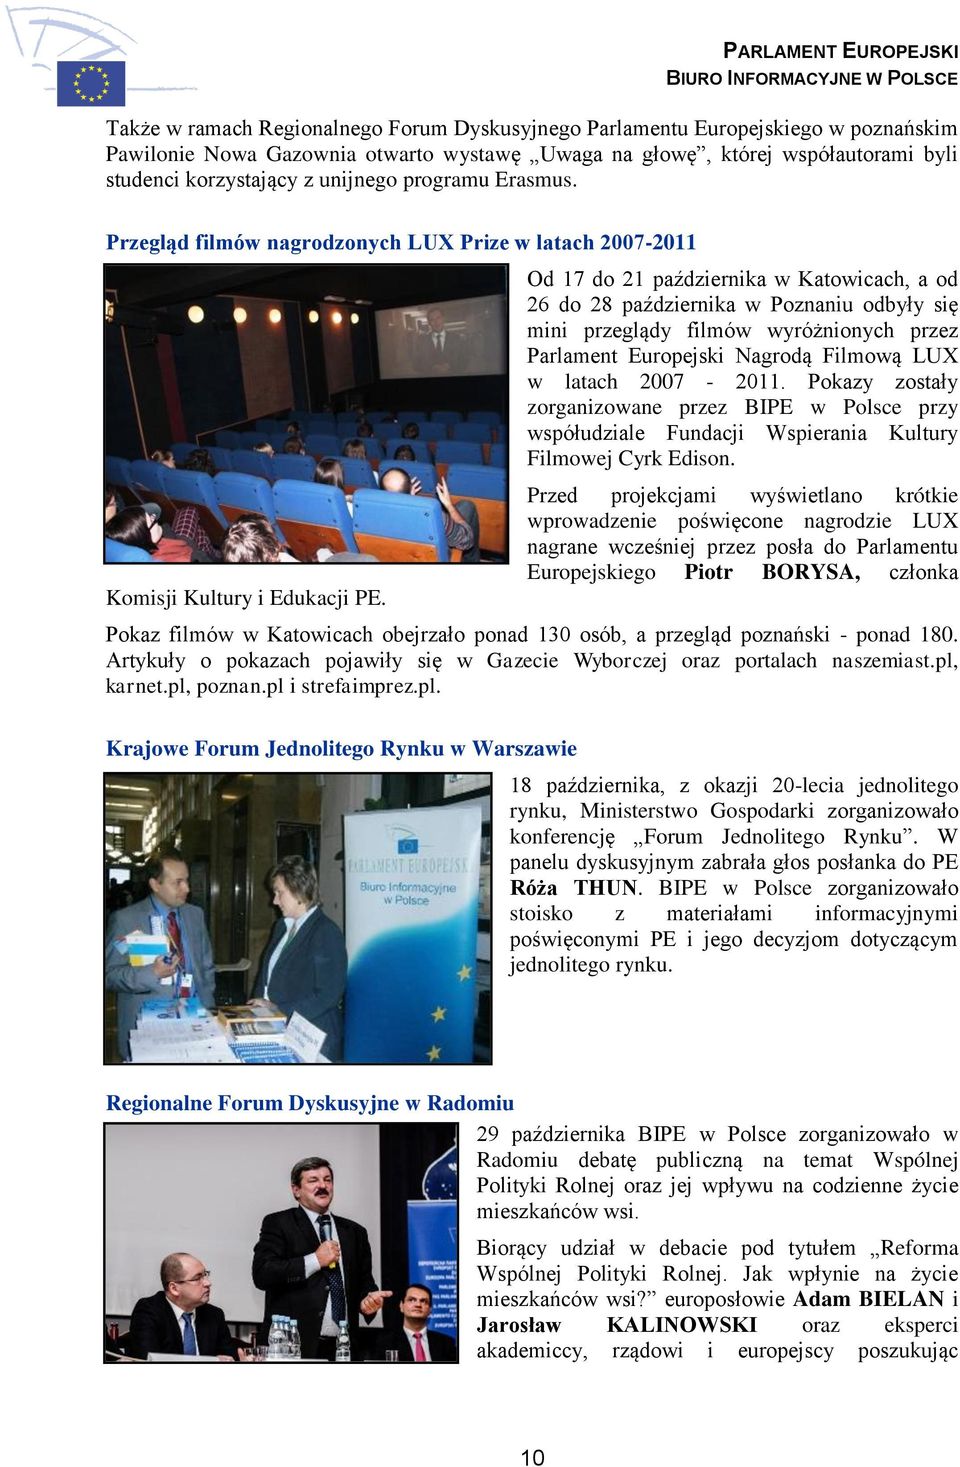 Od 17 do 21 października w Katowicach, a od 26 do 28 października w Poznaniu odbyły się mini przeglądy filmów wyróżnionych przez Parlament Europejski Nagrodą Filmową LUX w latach 2007-2011.